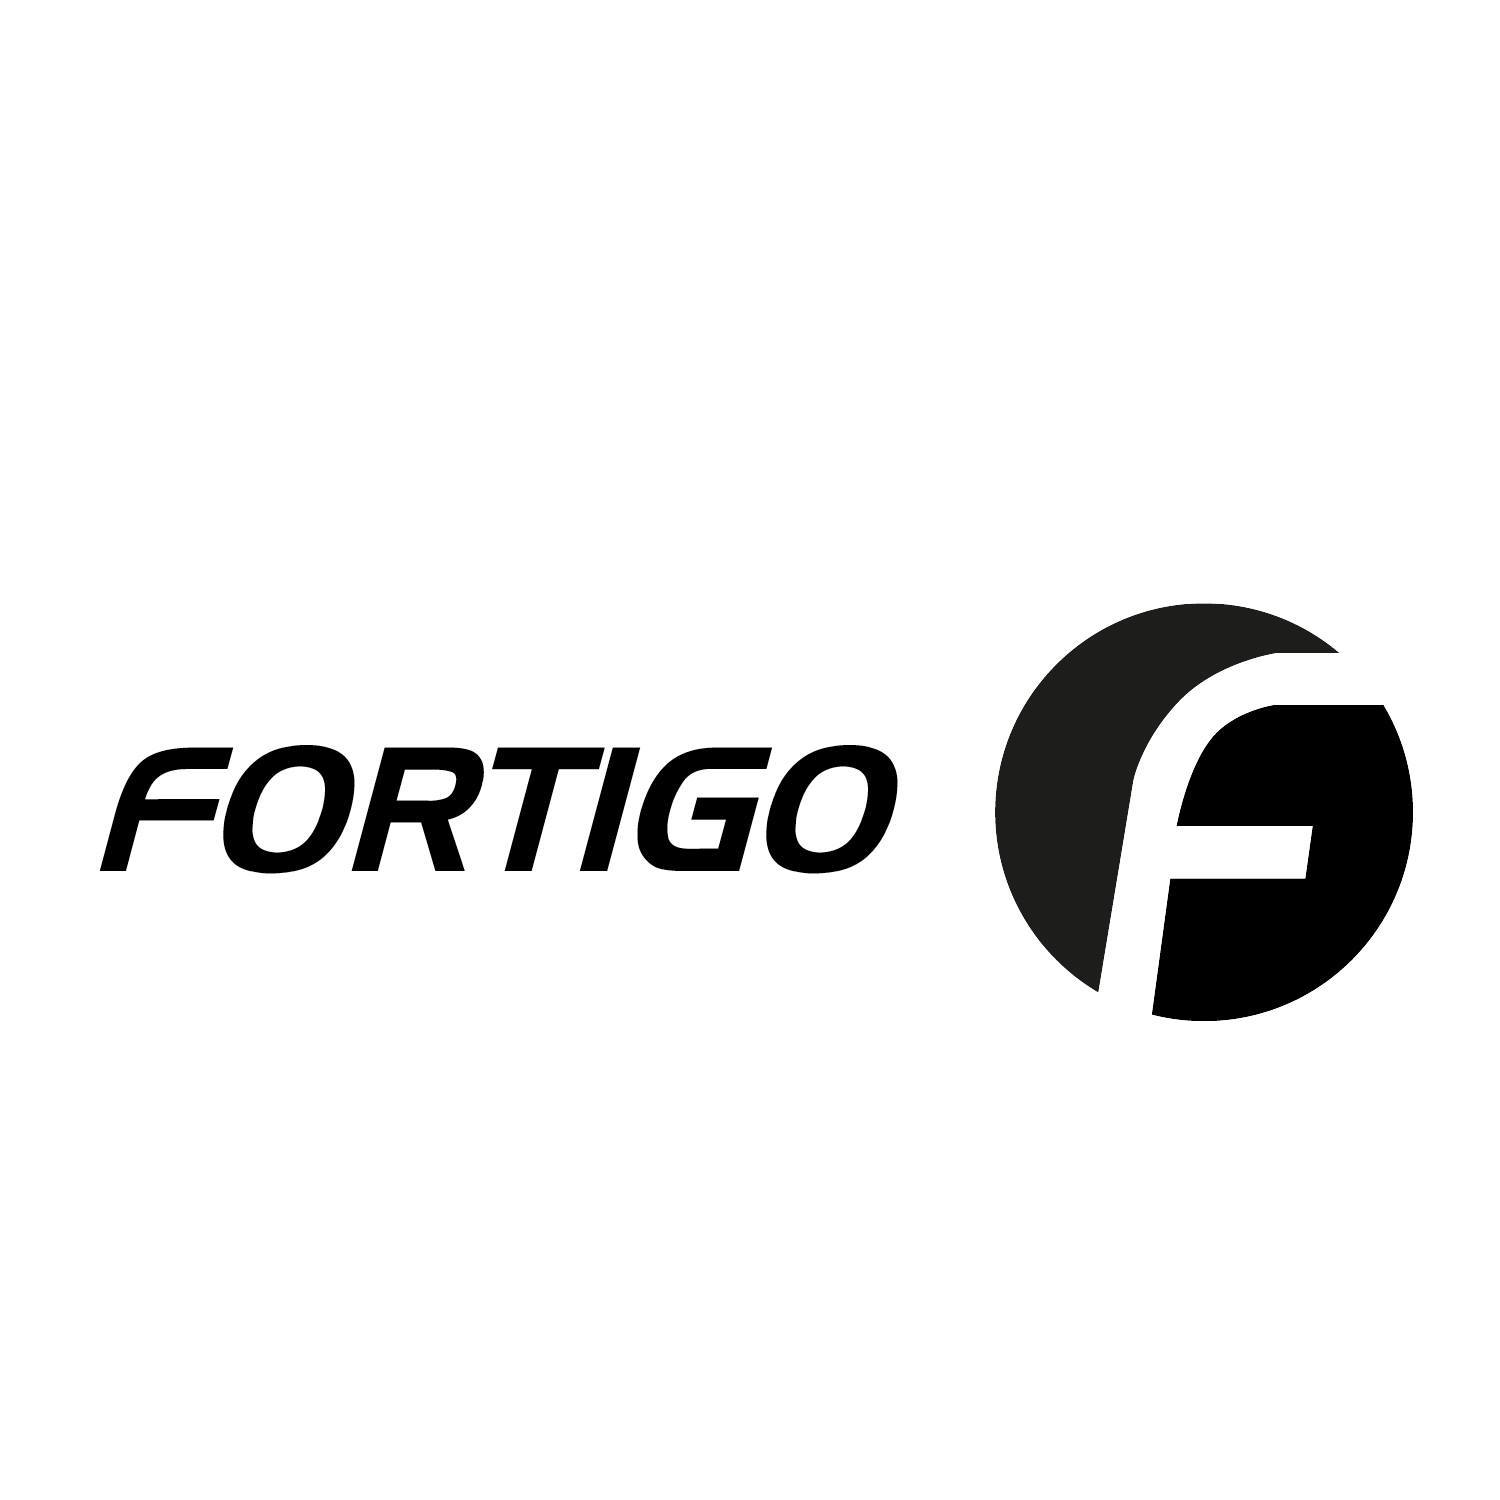 Fortigo Freight Services